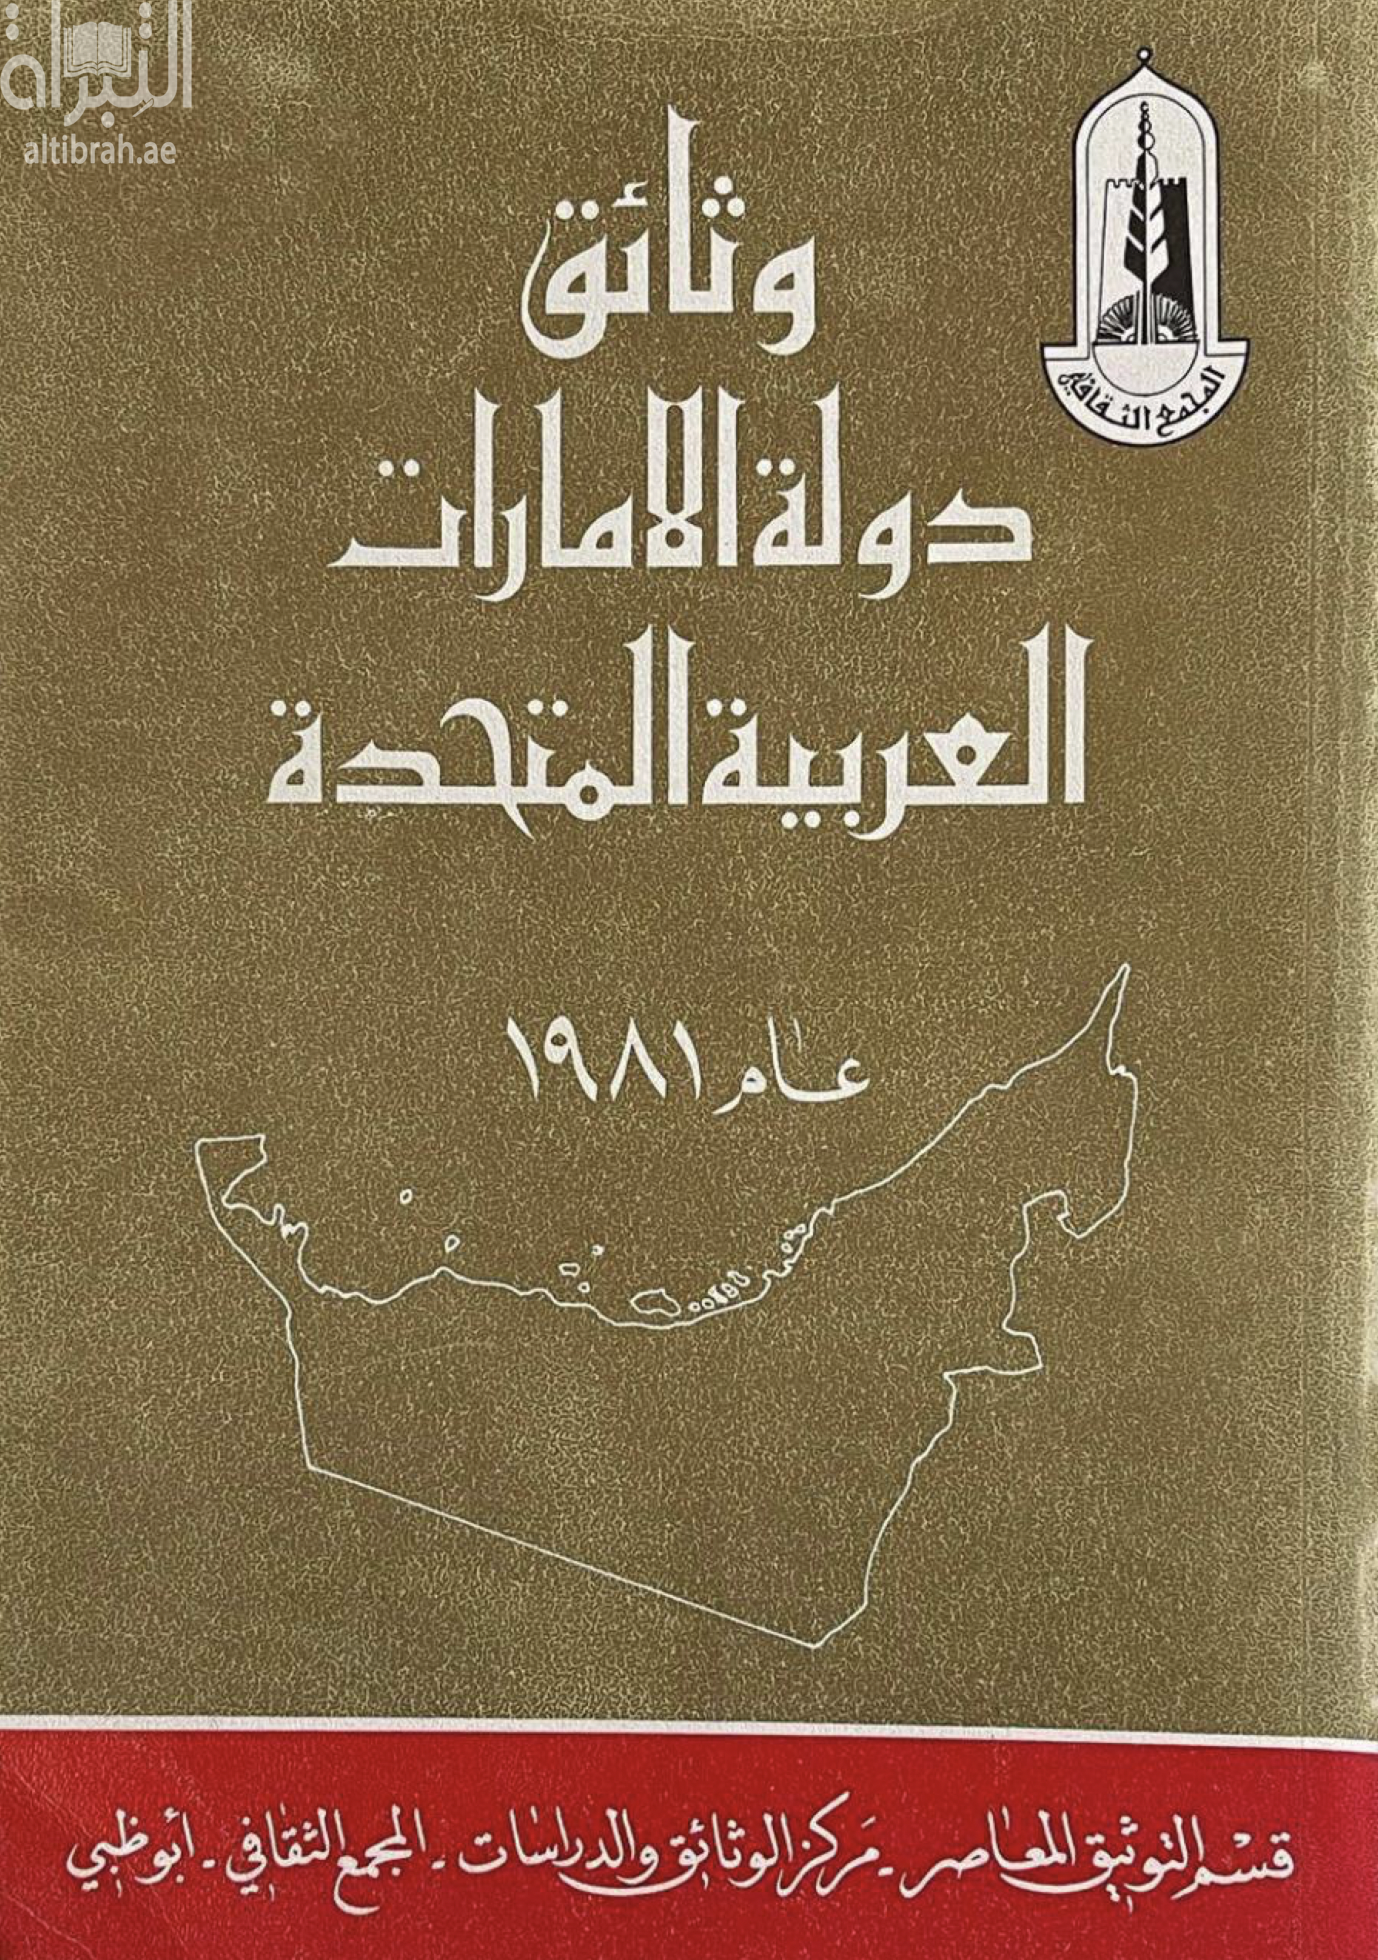 وثائق دولة الإمارات العربية المتحدة عام 1981